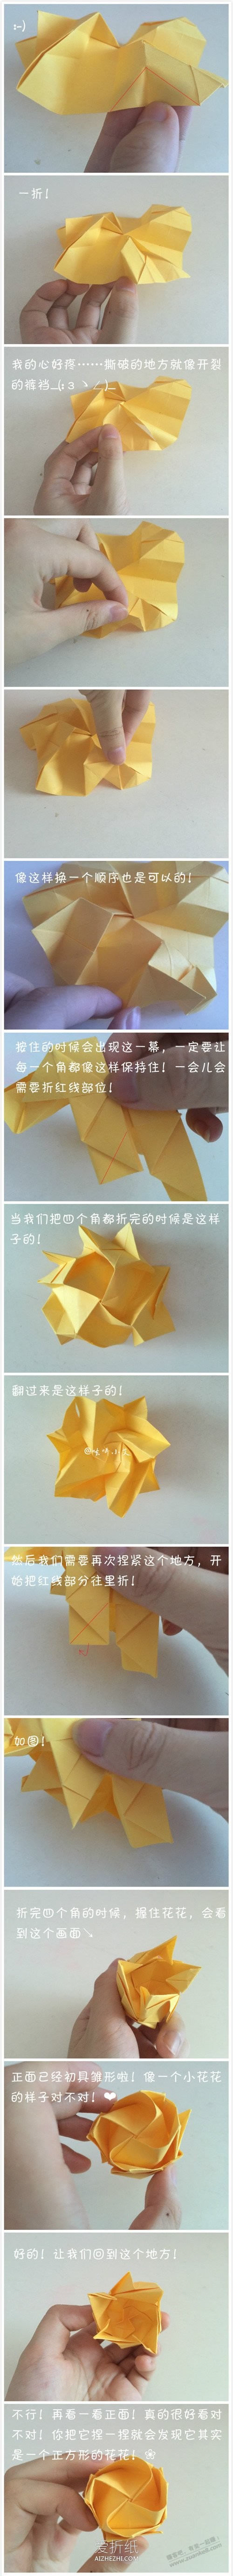 立体玫瑰的折法图解-惠小助(52huixz.com)